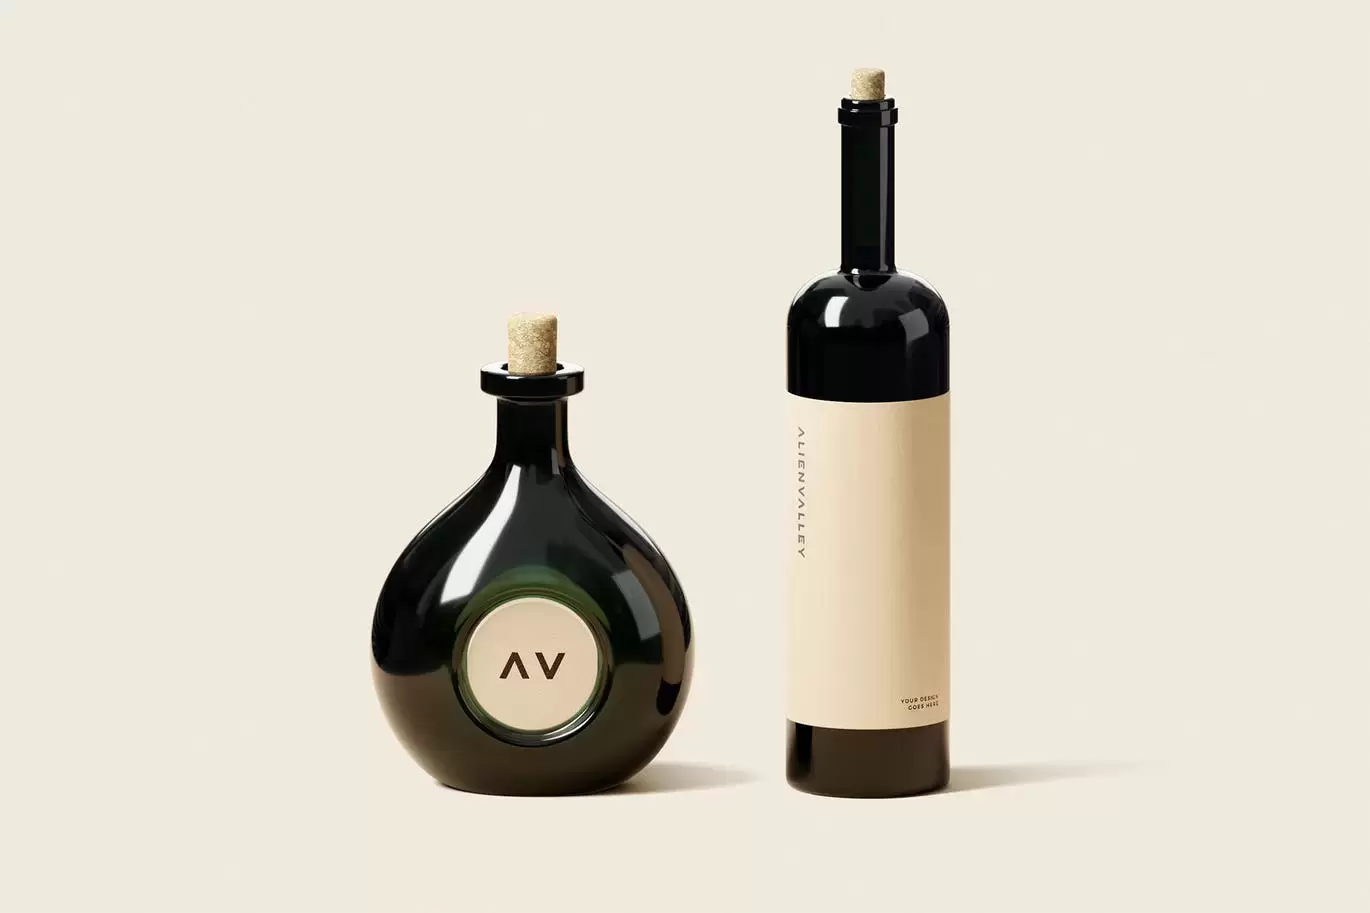 时尚高端专业的红酒葡萄酒洋酒酒瓶包装设计VI样机展示模型mockups免费下载